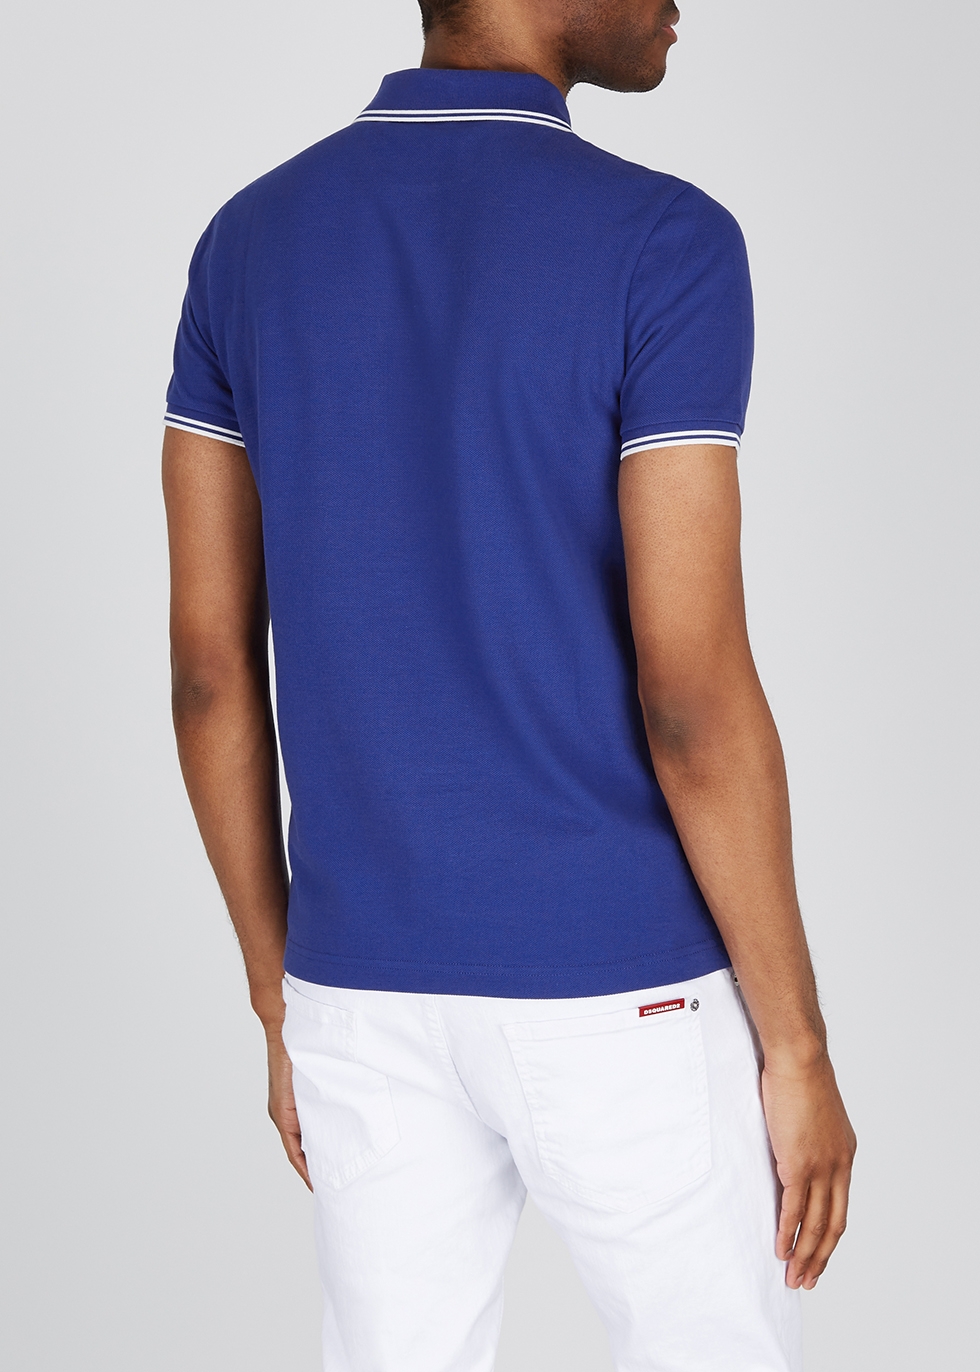 moncler polo shirt blue